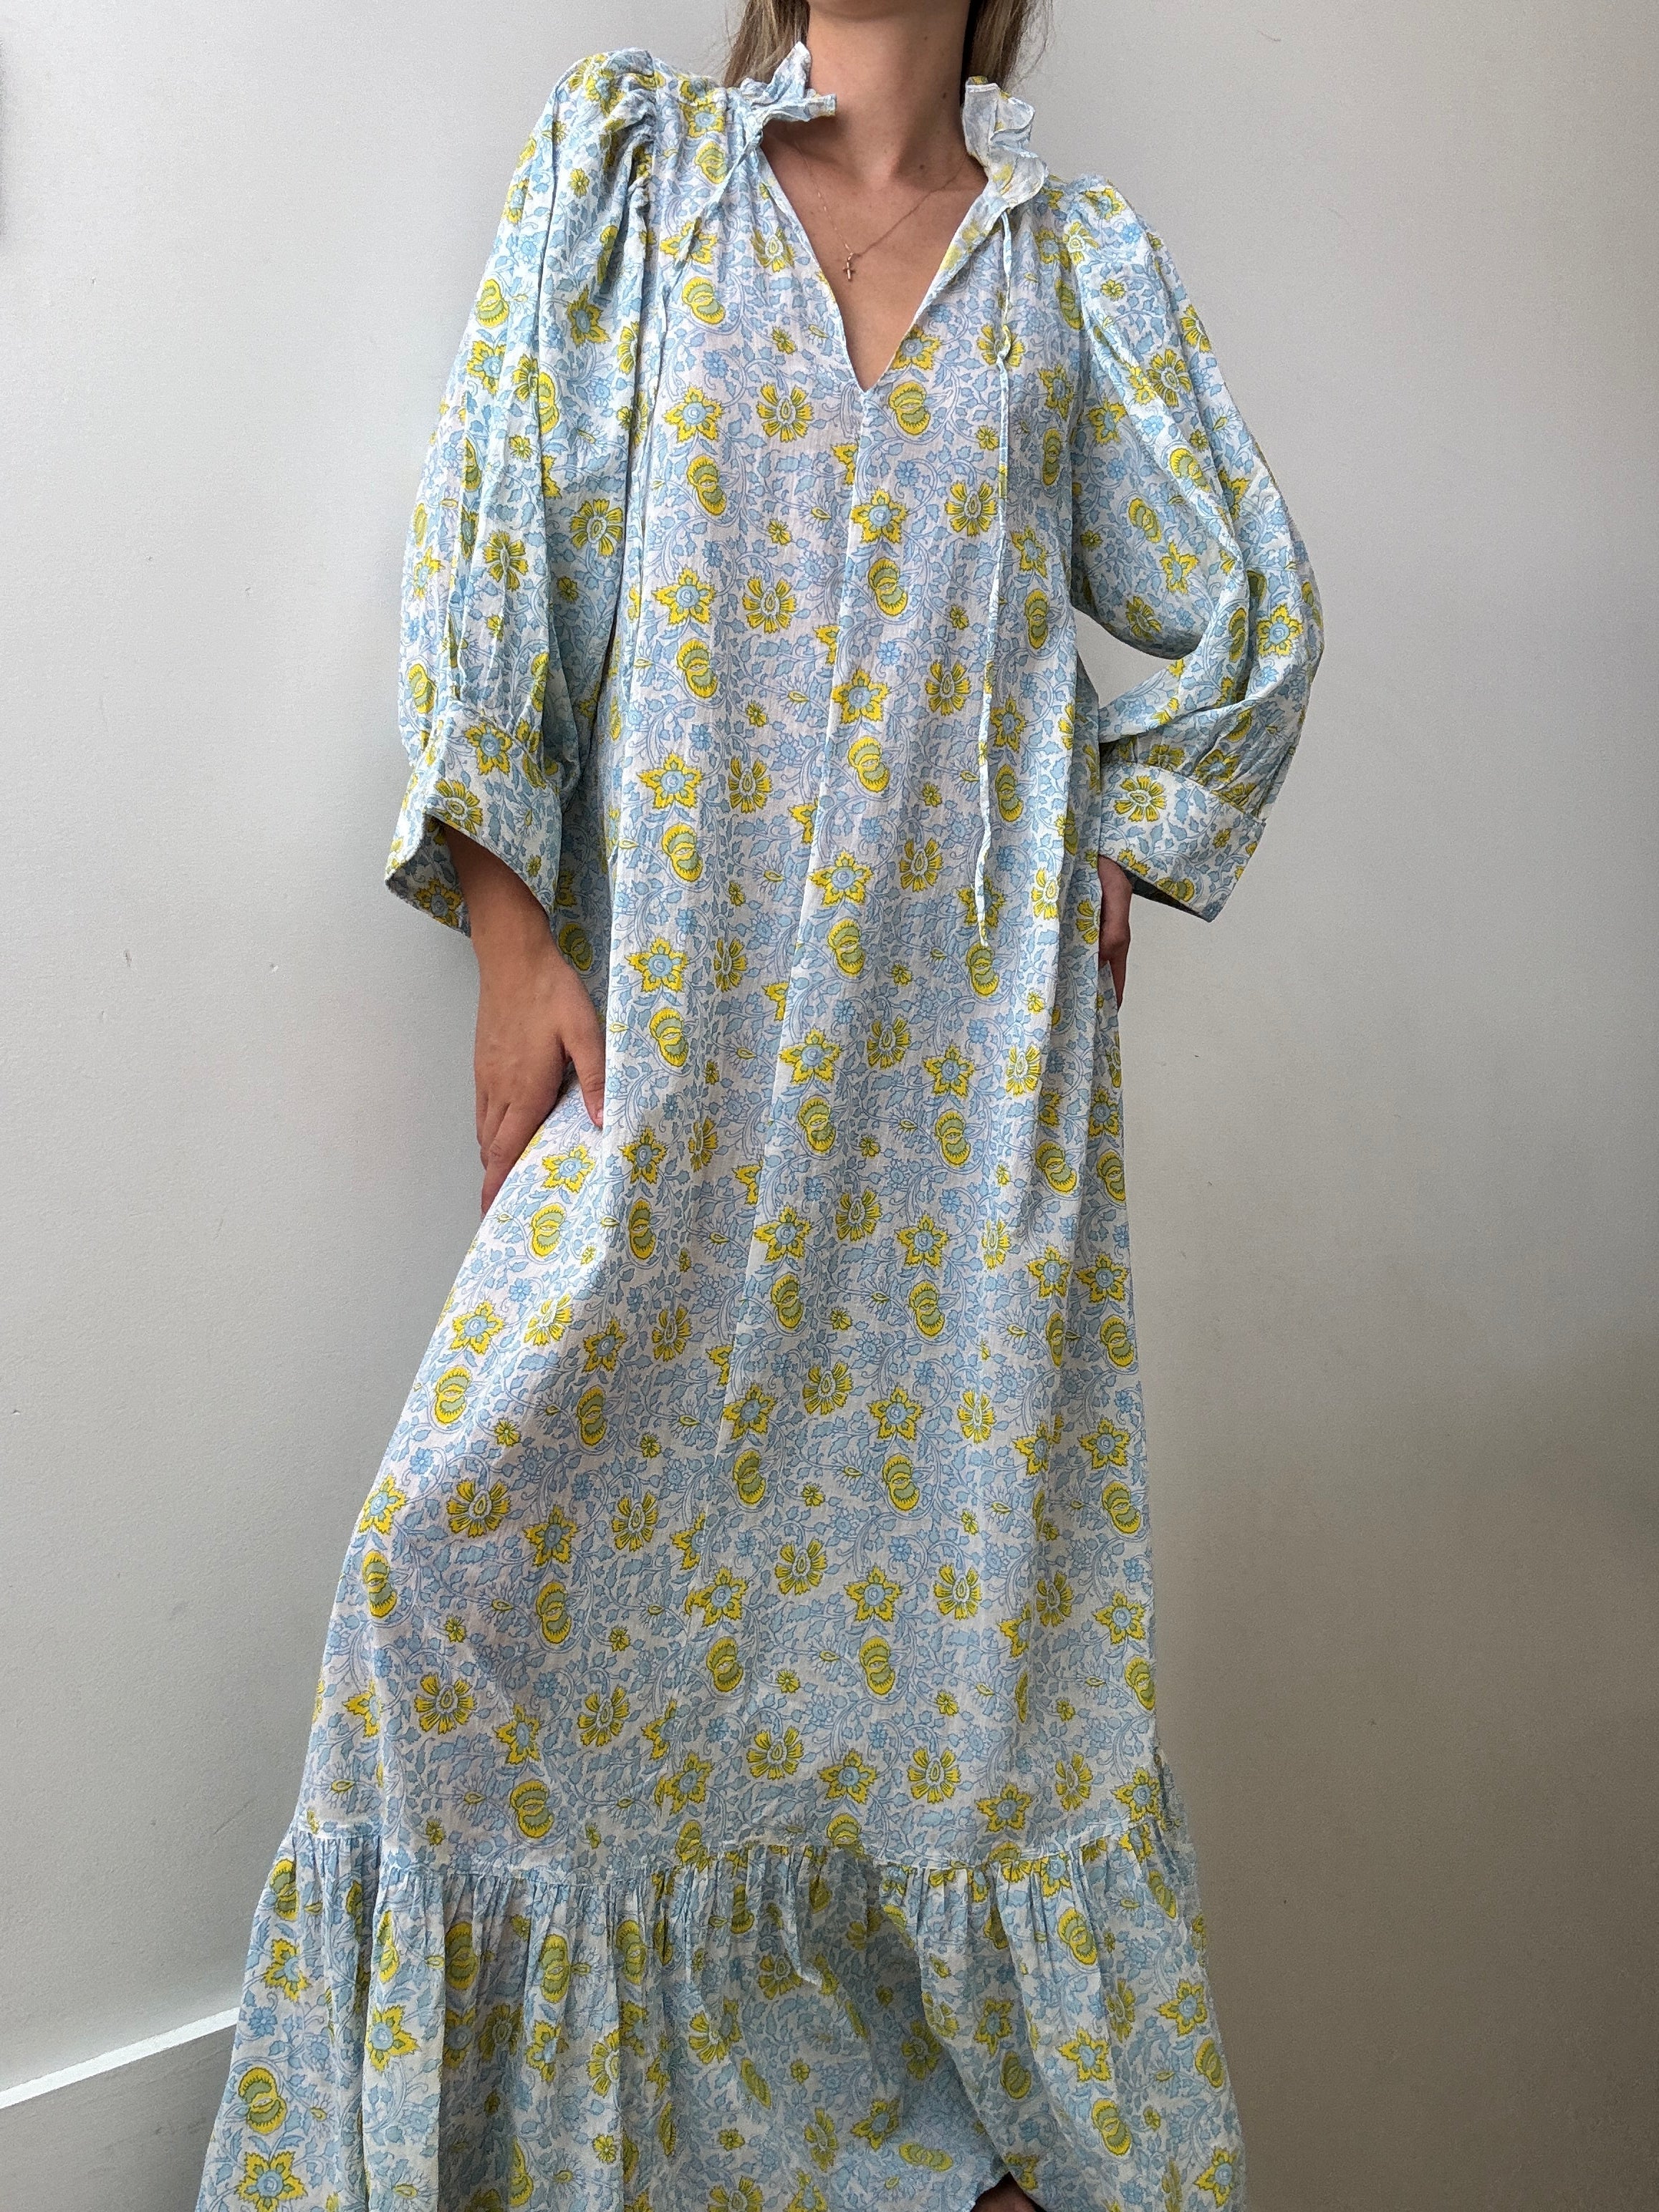 Evarae Dresses Medium Floral Maxi Dress With Sleeves